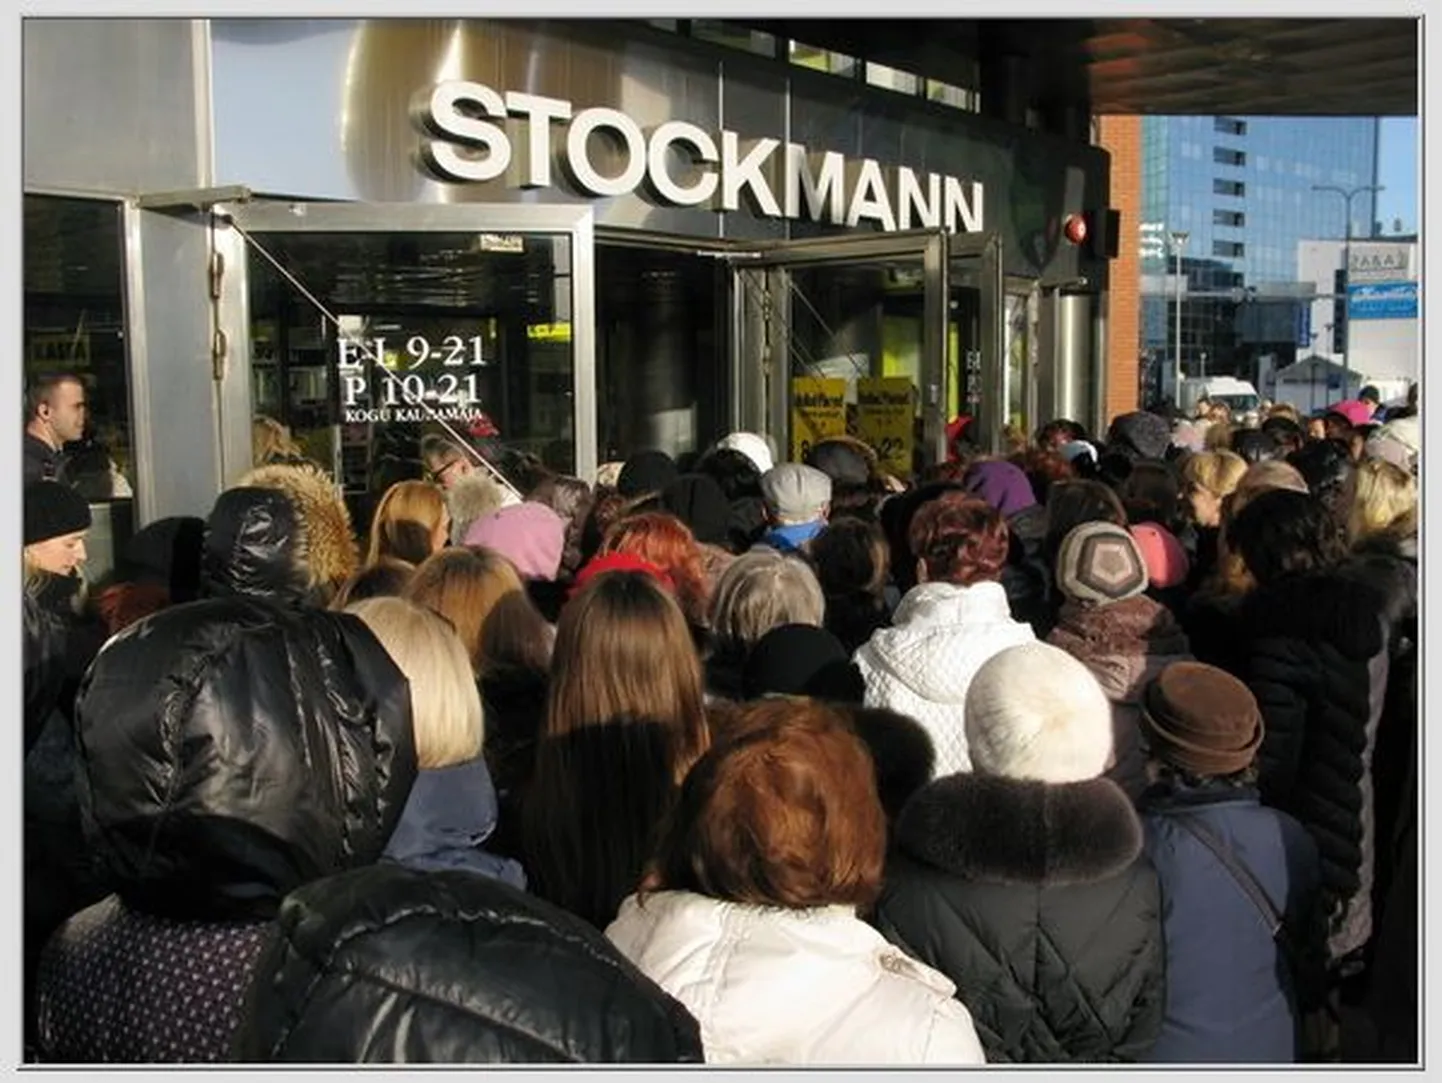 Stockmanni kaubamaja